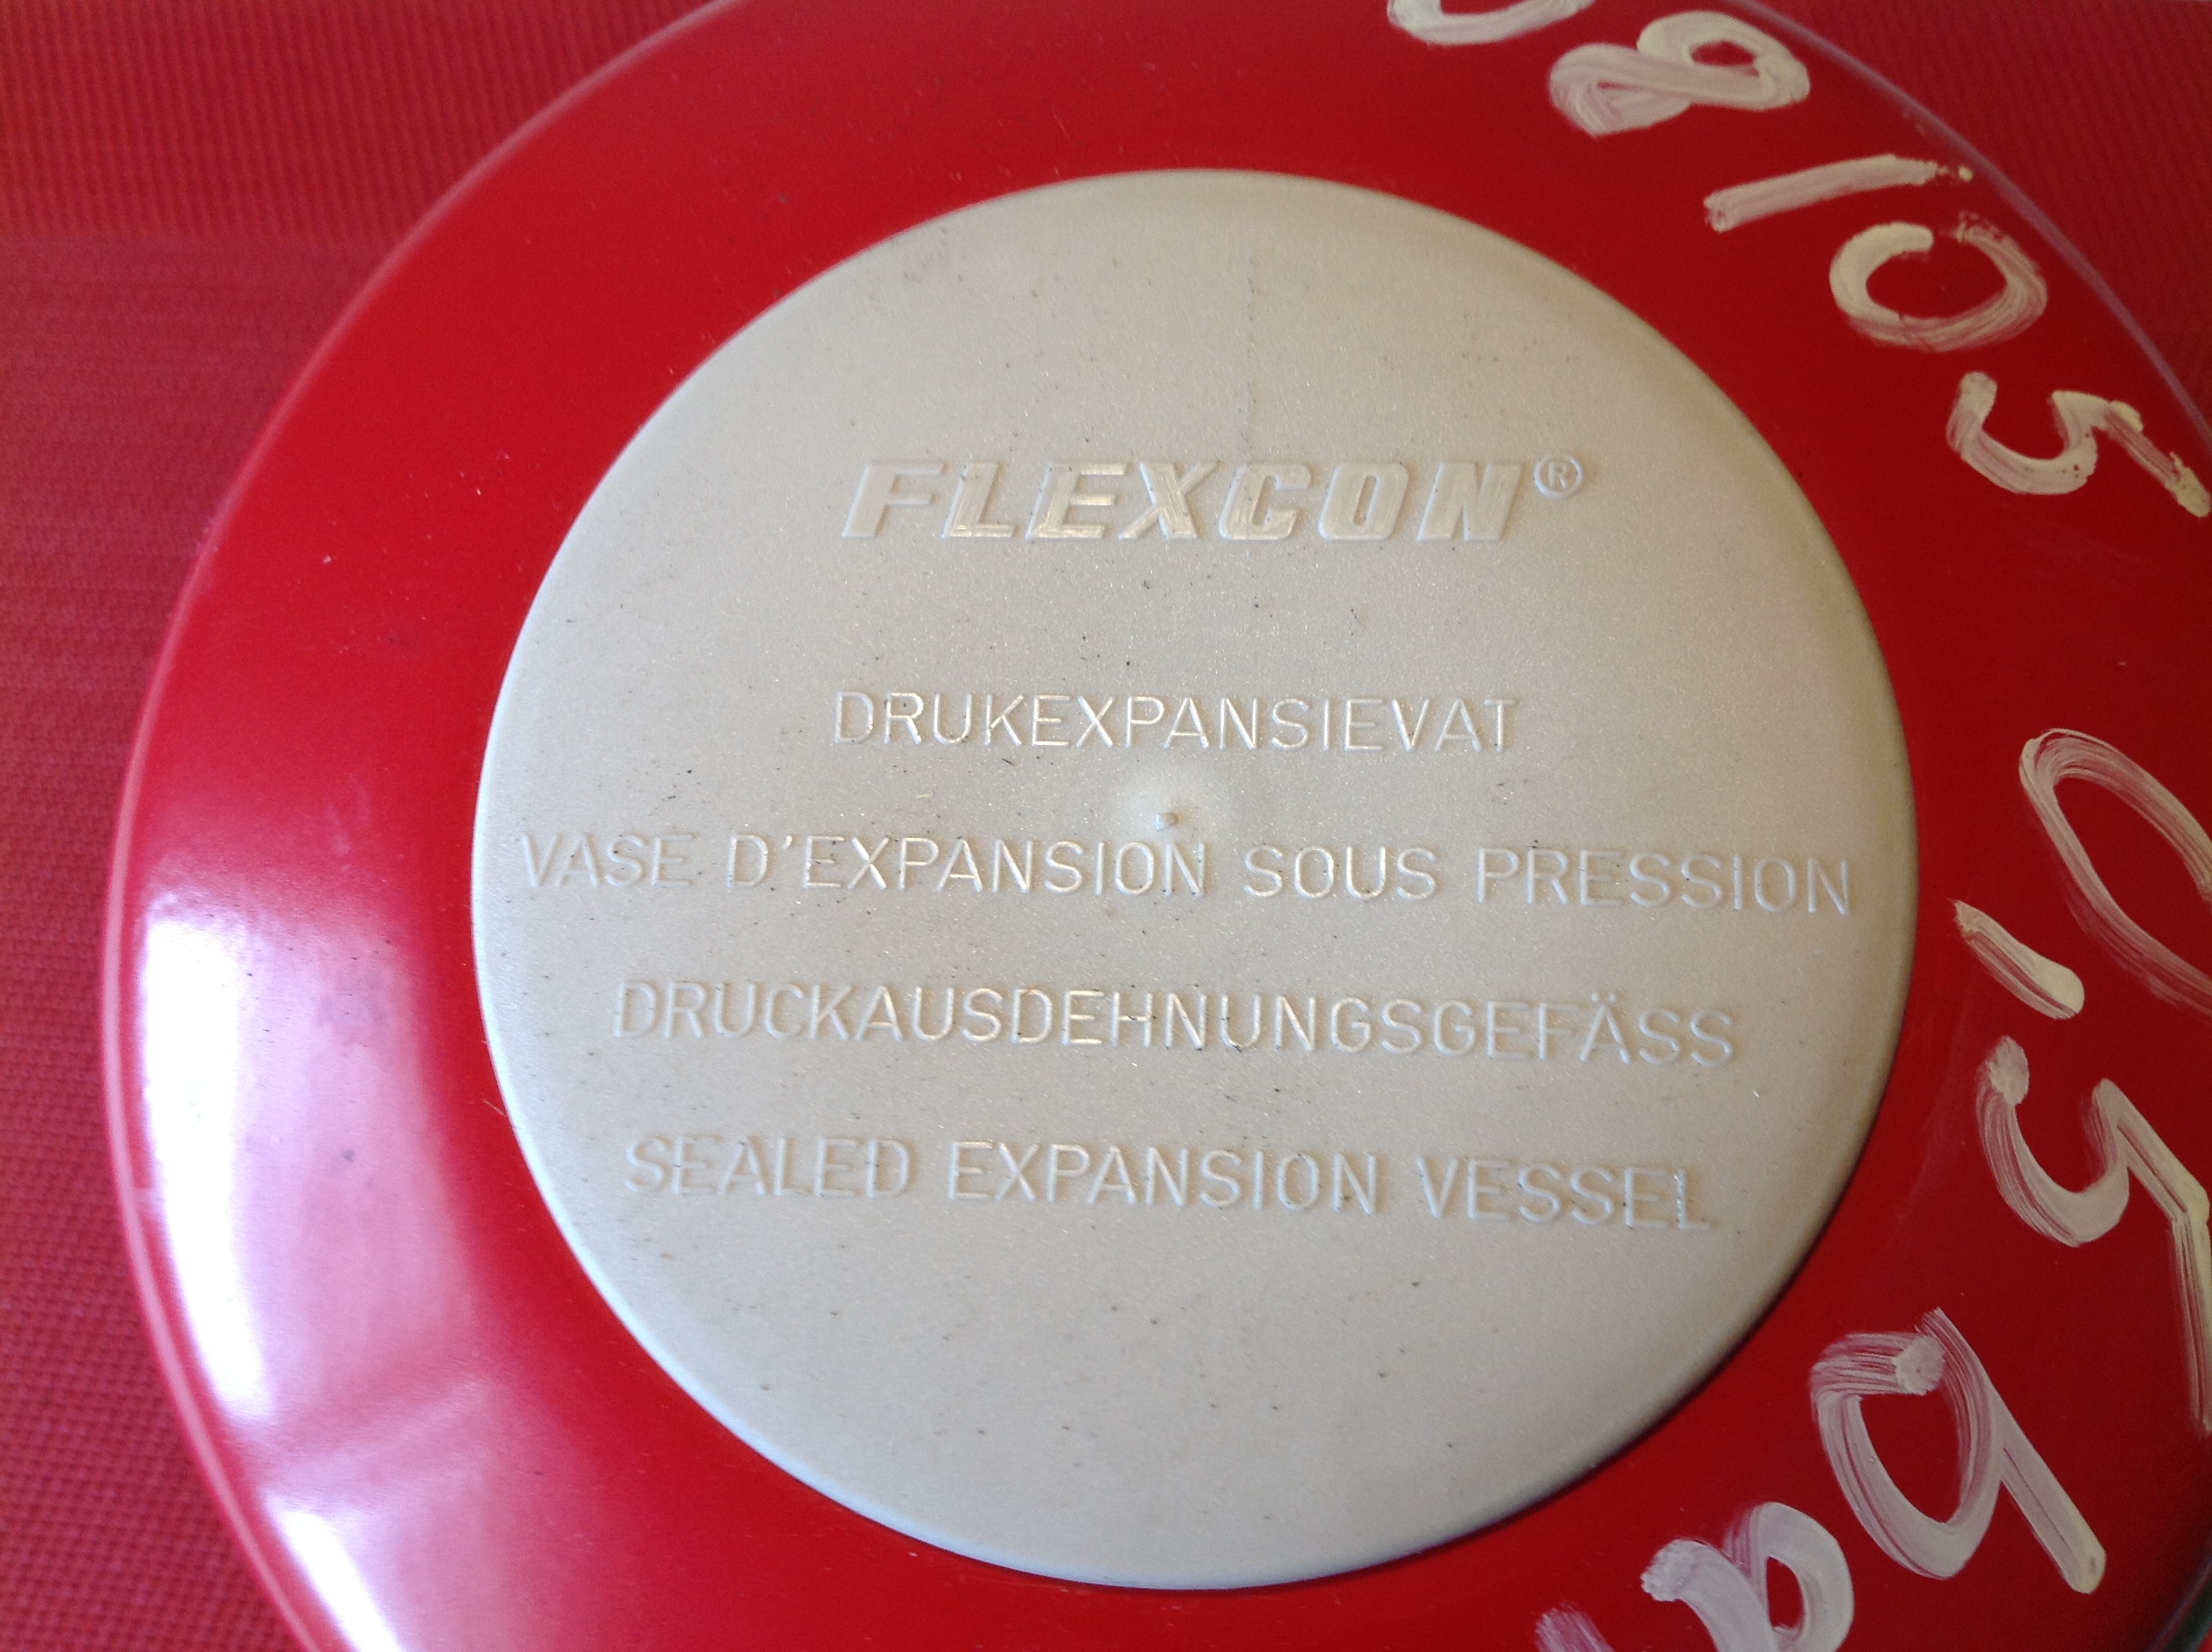 Flamco Flexcon 2 Druckausdehnungsgefäss 6 bar